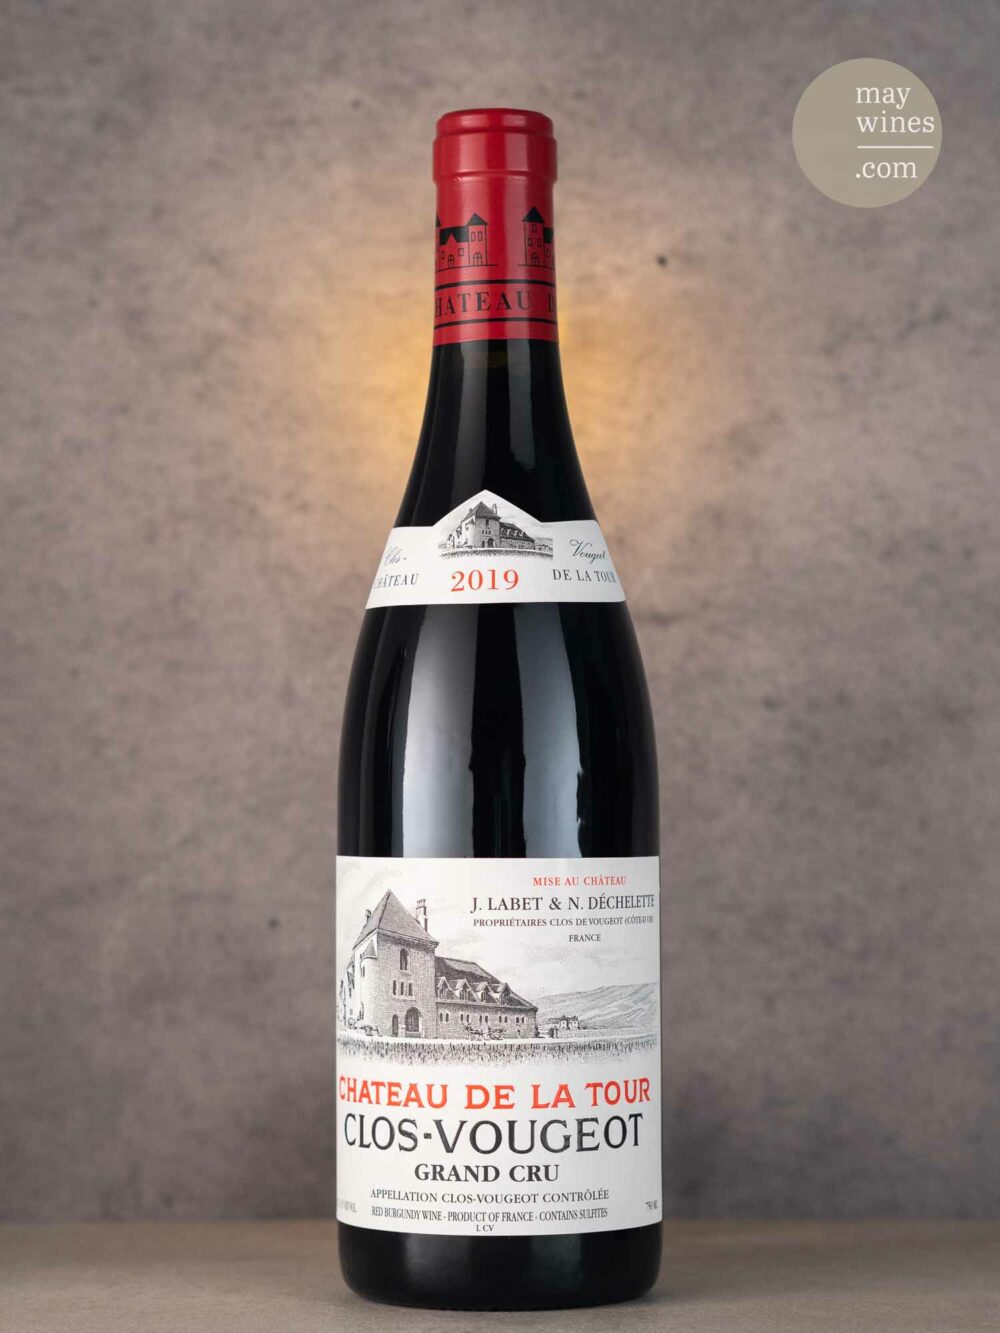 May Wines – Rotwein – 2019 Clos-Vougeot Grand Cru - Château de la Tour